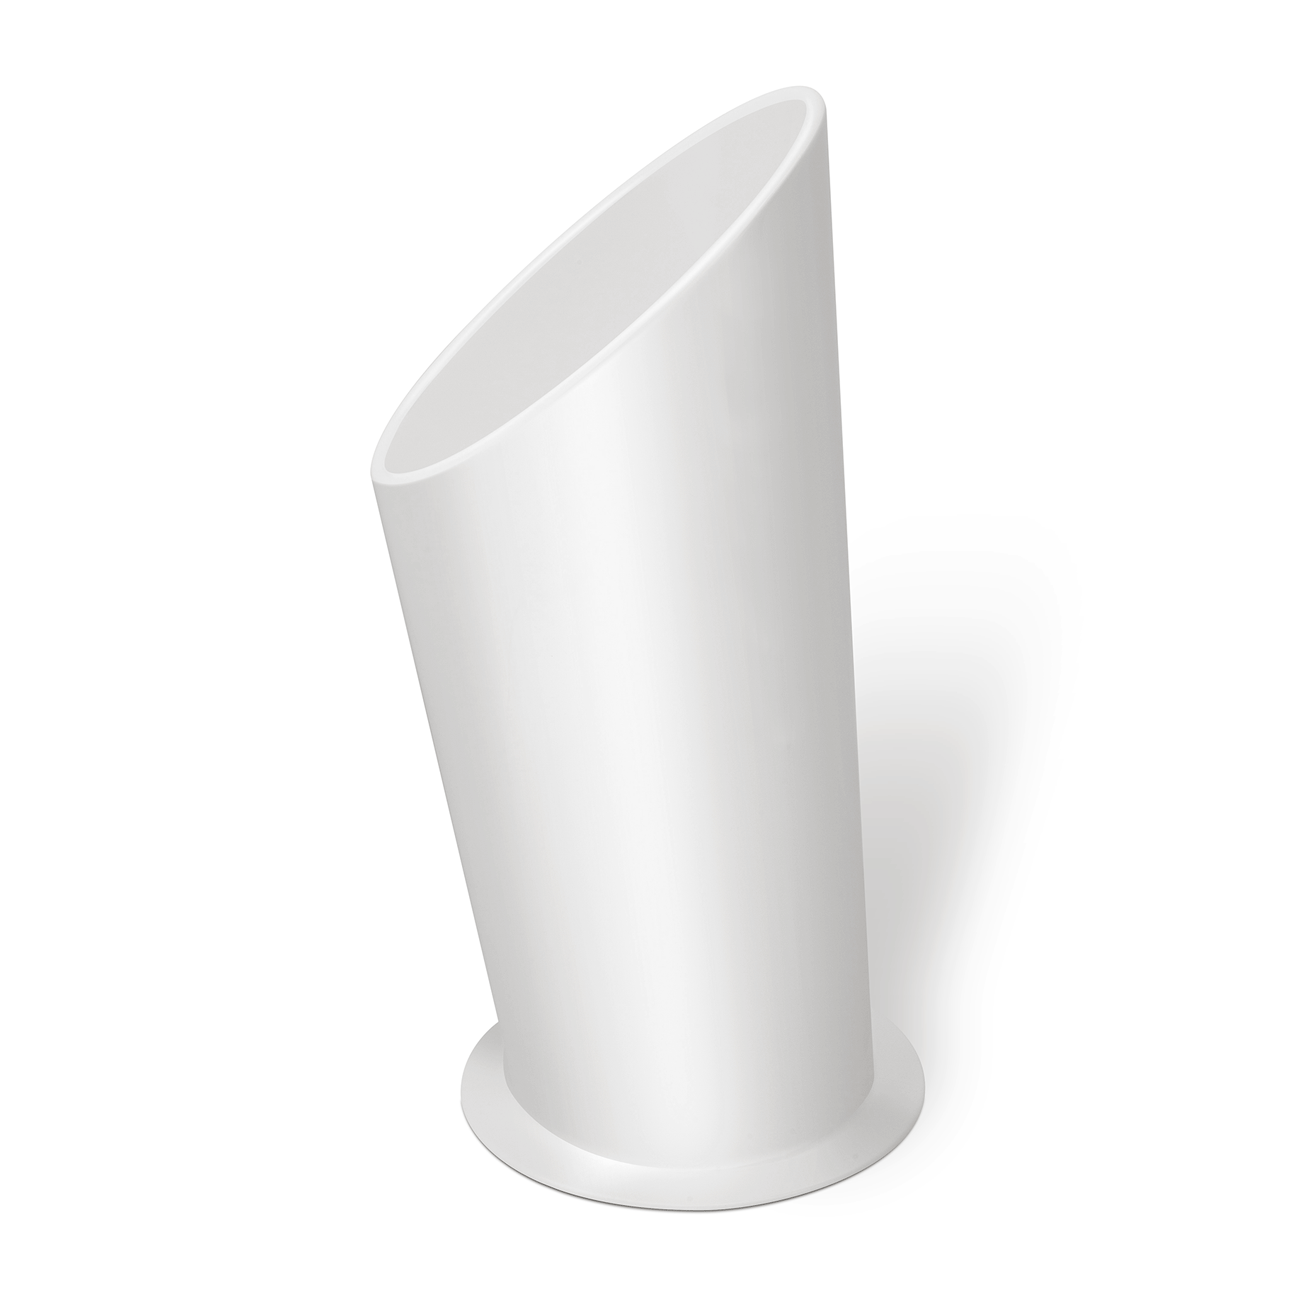 MODEL Pylon White 3D View